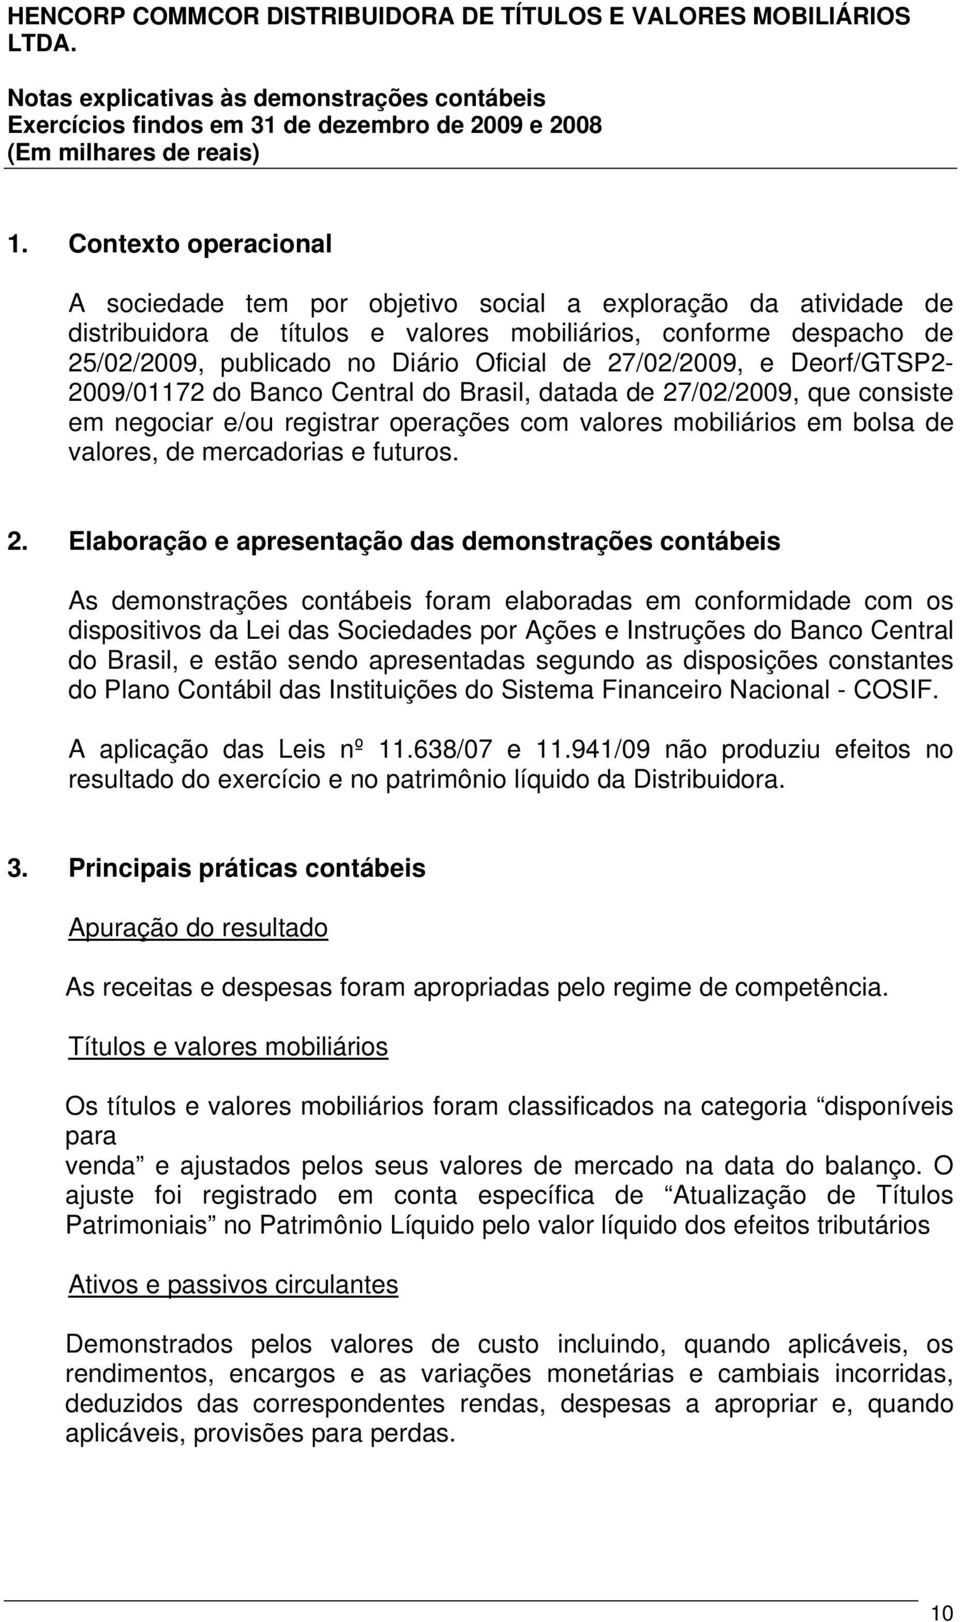 27/02/2009, e Deorf/GTSP2-2009/01172 do Banco Central do Brasil, datada de 27/02/2009, que consiste em negociar e/ou registrar operações com valores mobiliários em bolsa de valores, de mercadorias e